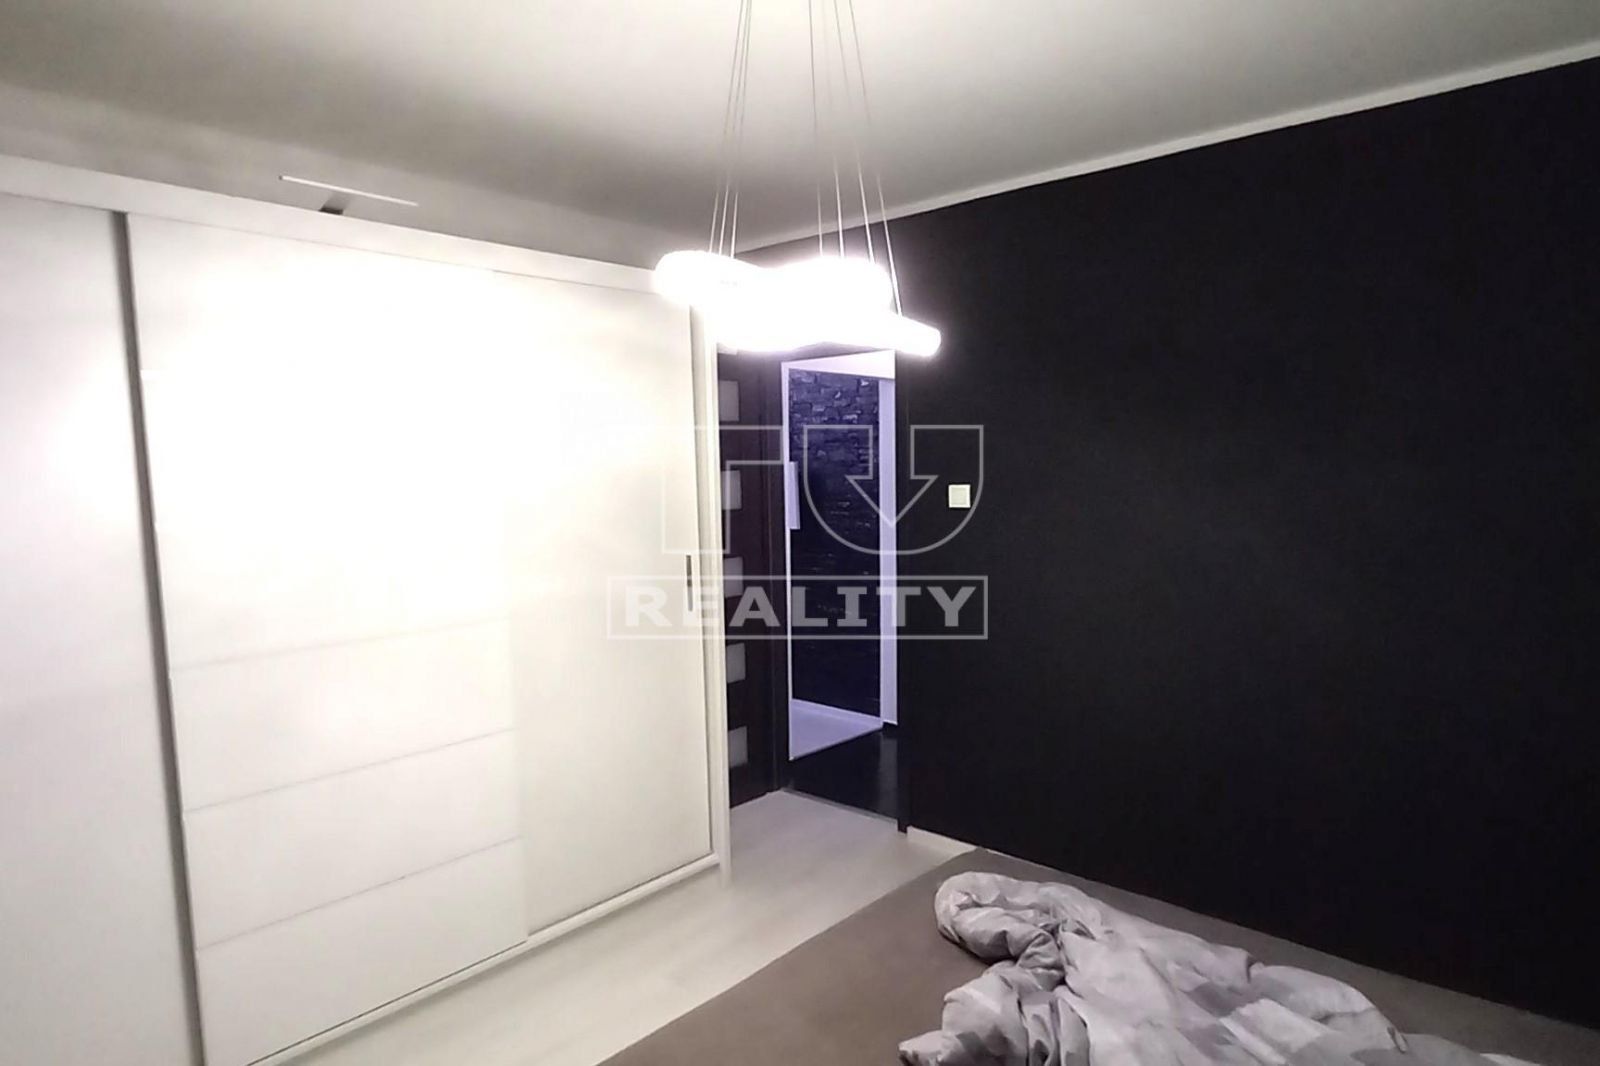 TUreality ponúka na predaj zrekonštruovaný 3 izbový byt v tichej lokalite v Šamoríne